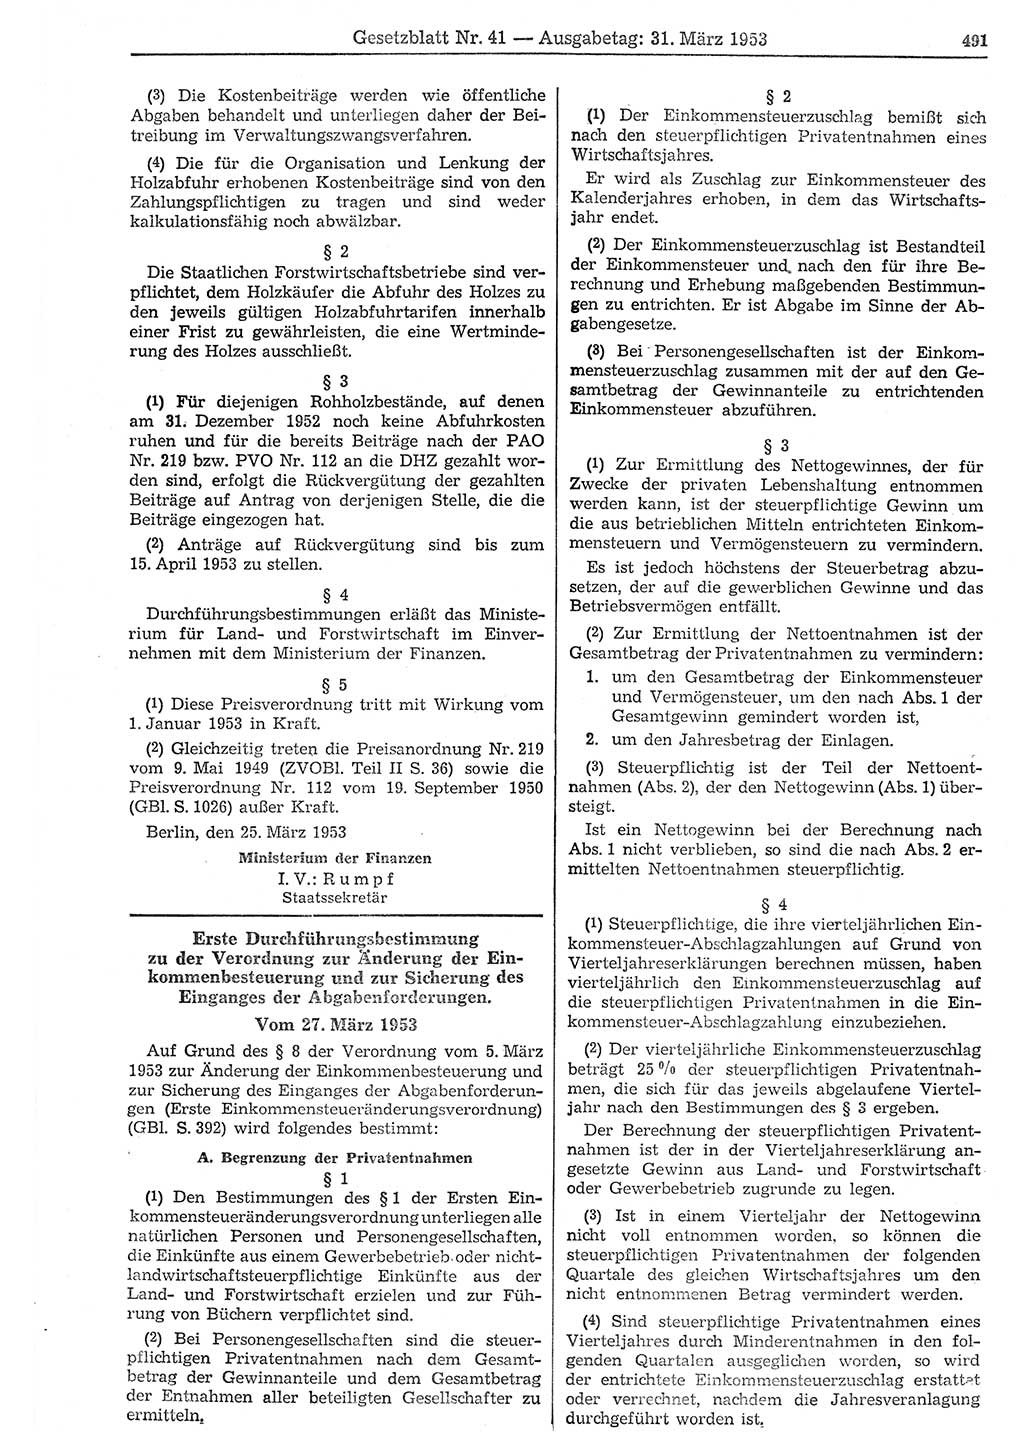 Gesetzblatt (GBl.) der Deutschen Demokratischen Republik (DDR) 1953, Seite 491 (GBl. DDR 1953, S. 491)